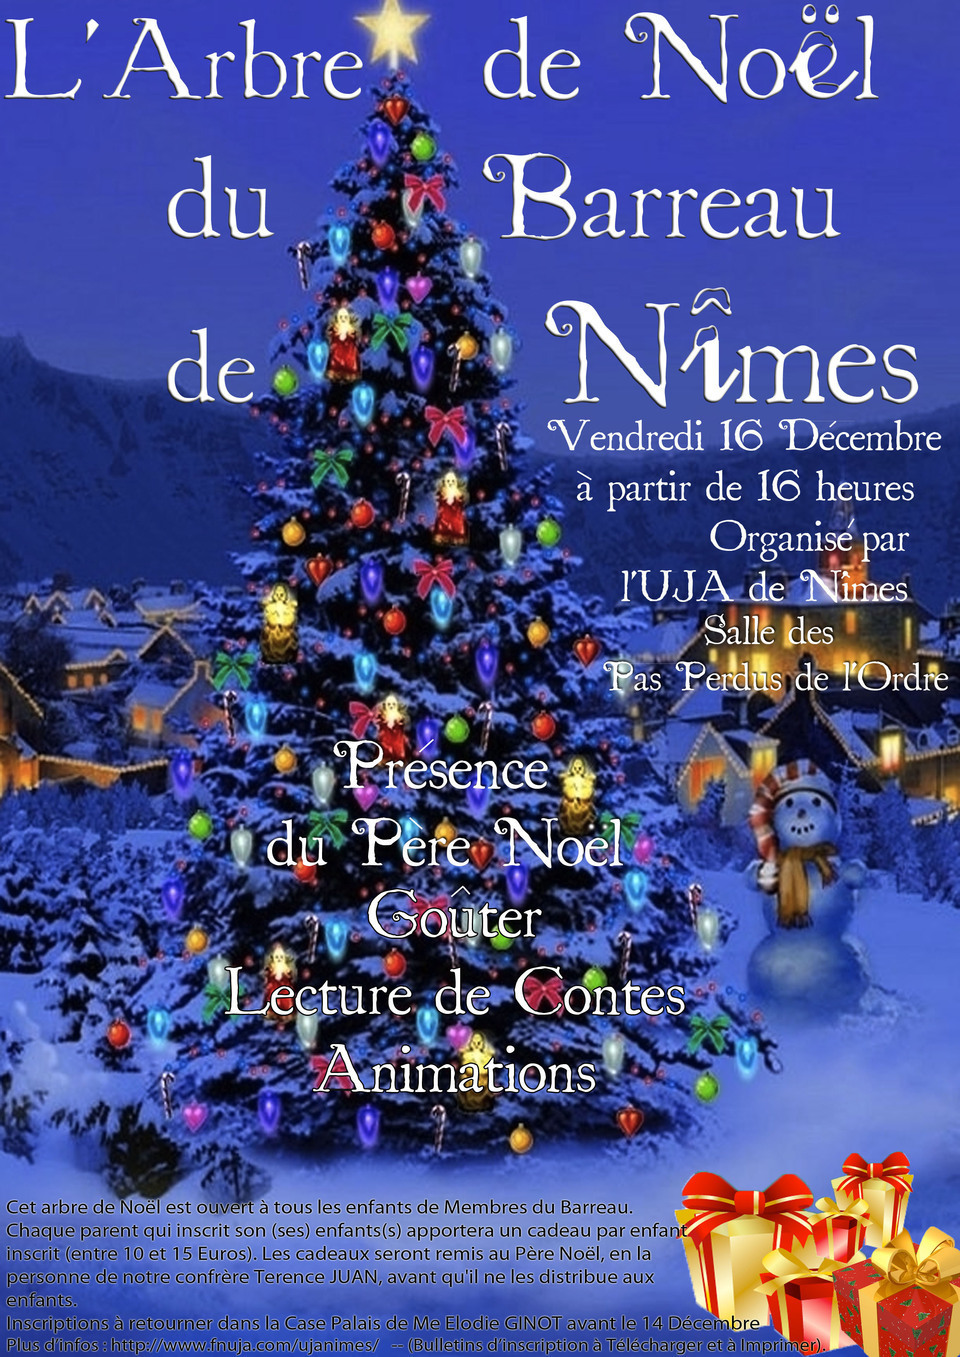 L'Arbre de Noël 2011 du Barreau de Nîmes